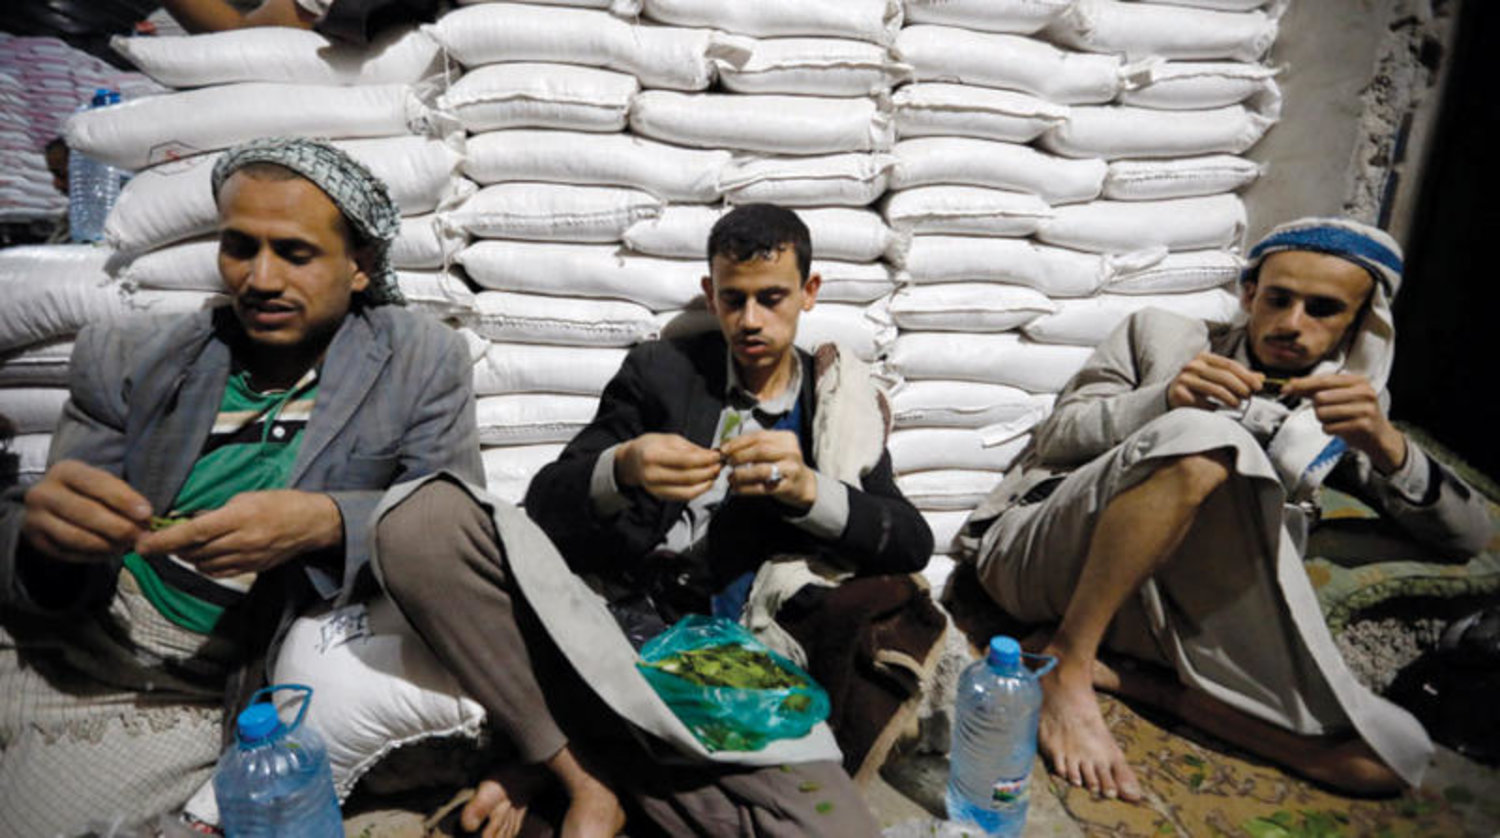 ندوة دولية تتهم الحوثيين بإنشاء “هيكلية متطورة” لاستغلال المساعدات الإنسانية